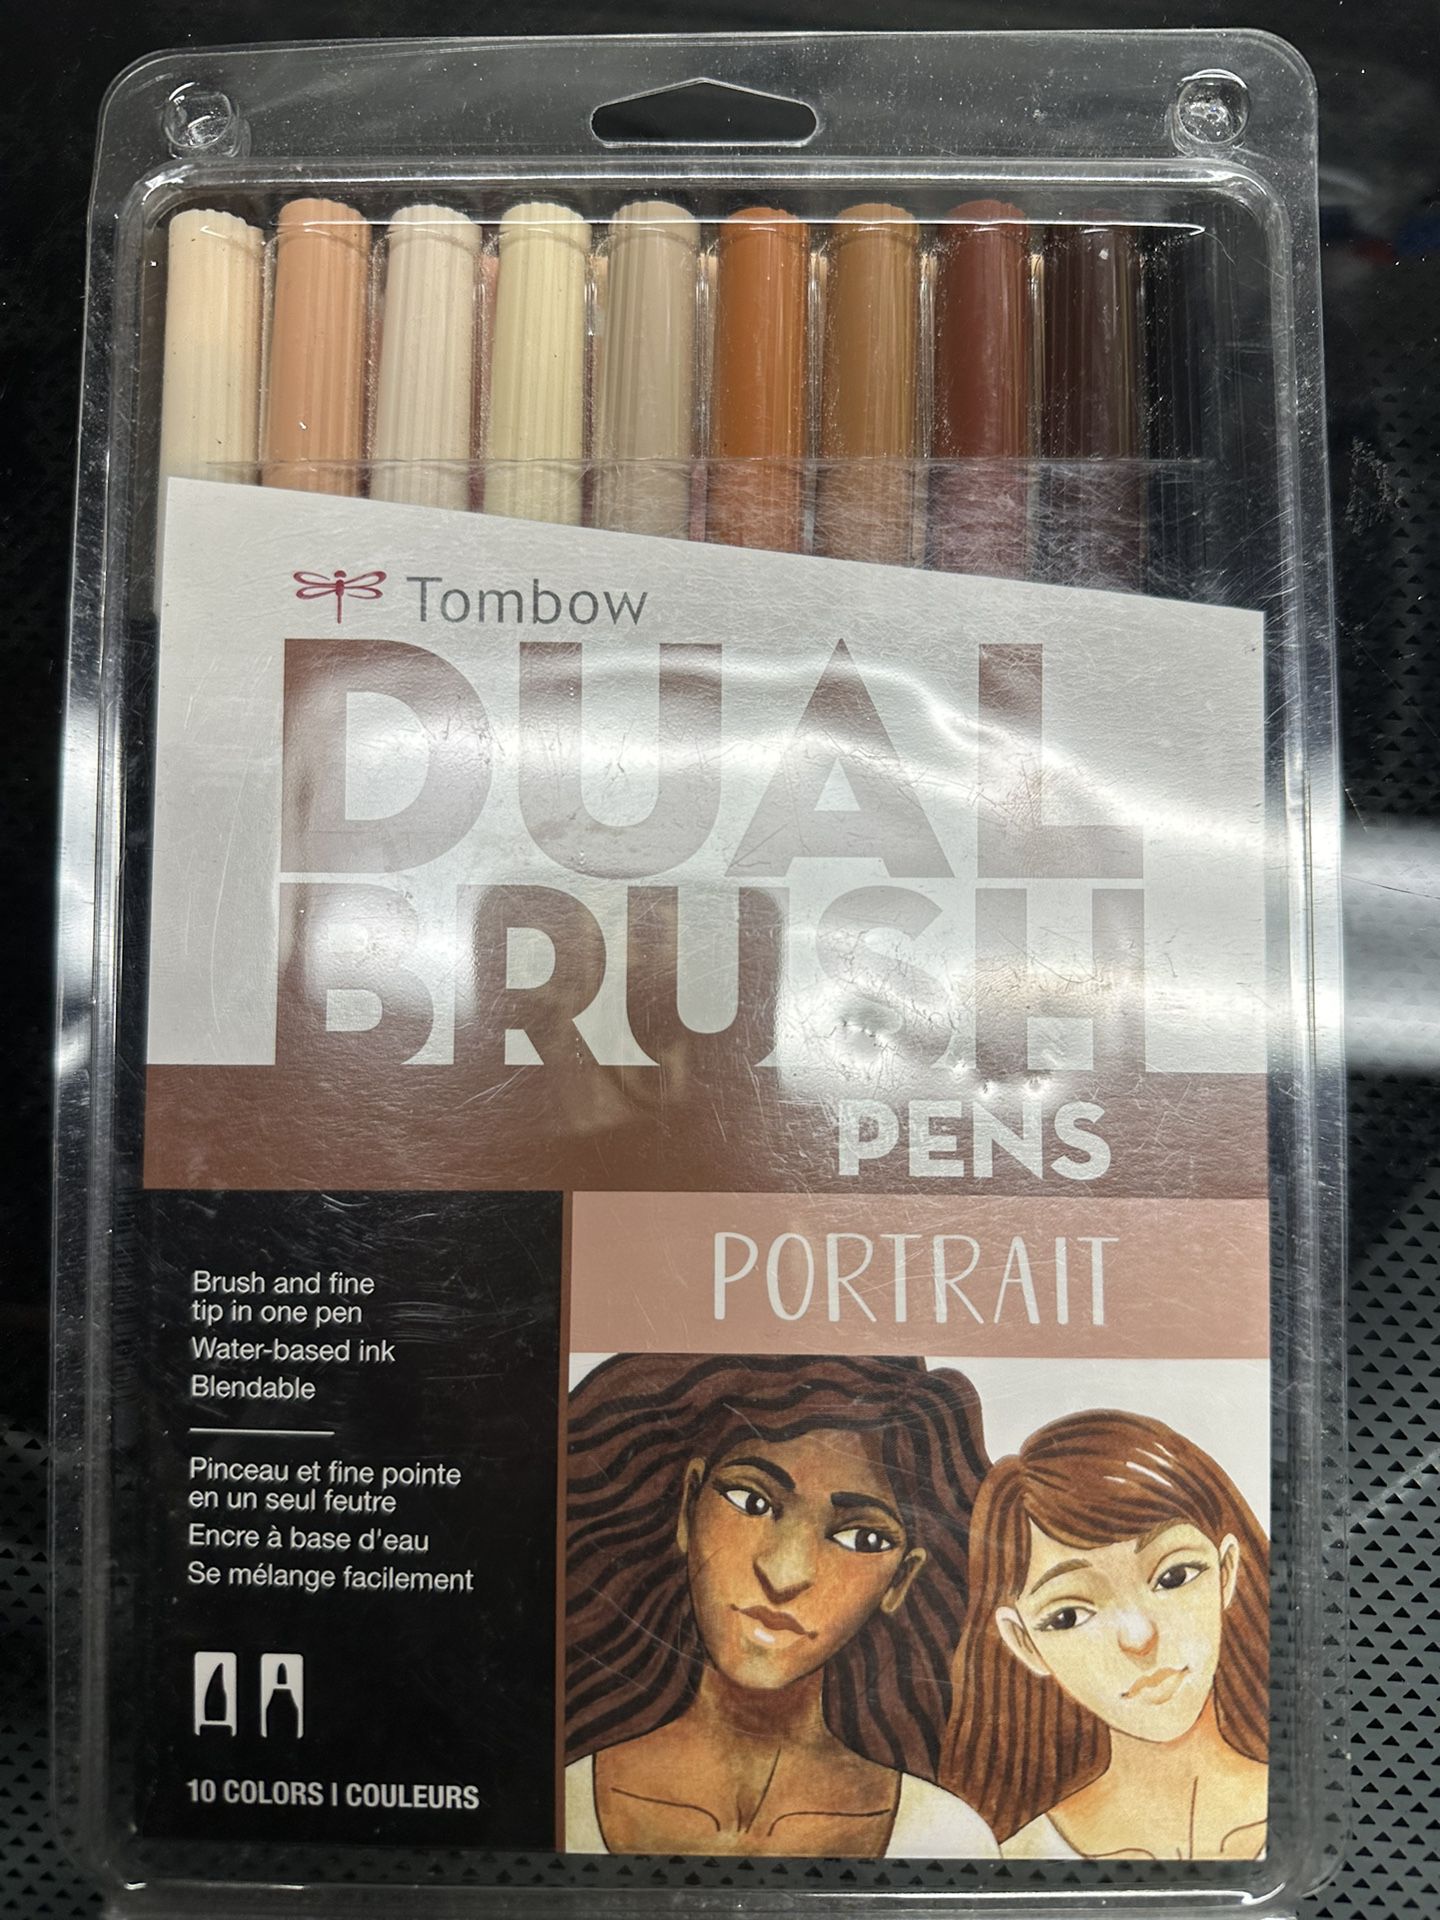 Portrait Dual Pens